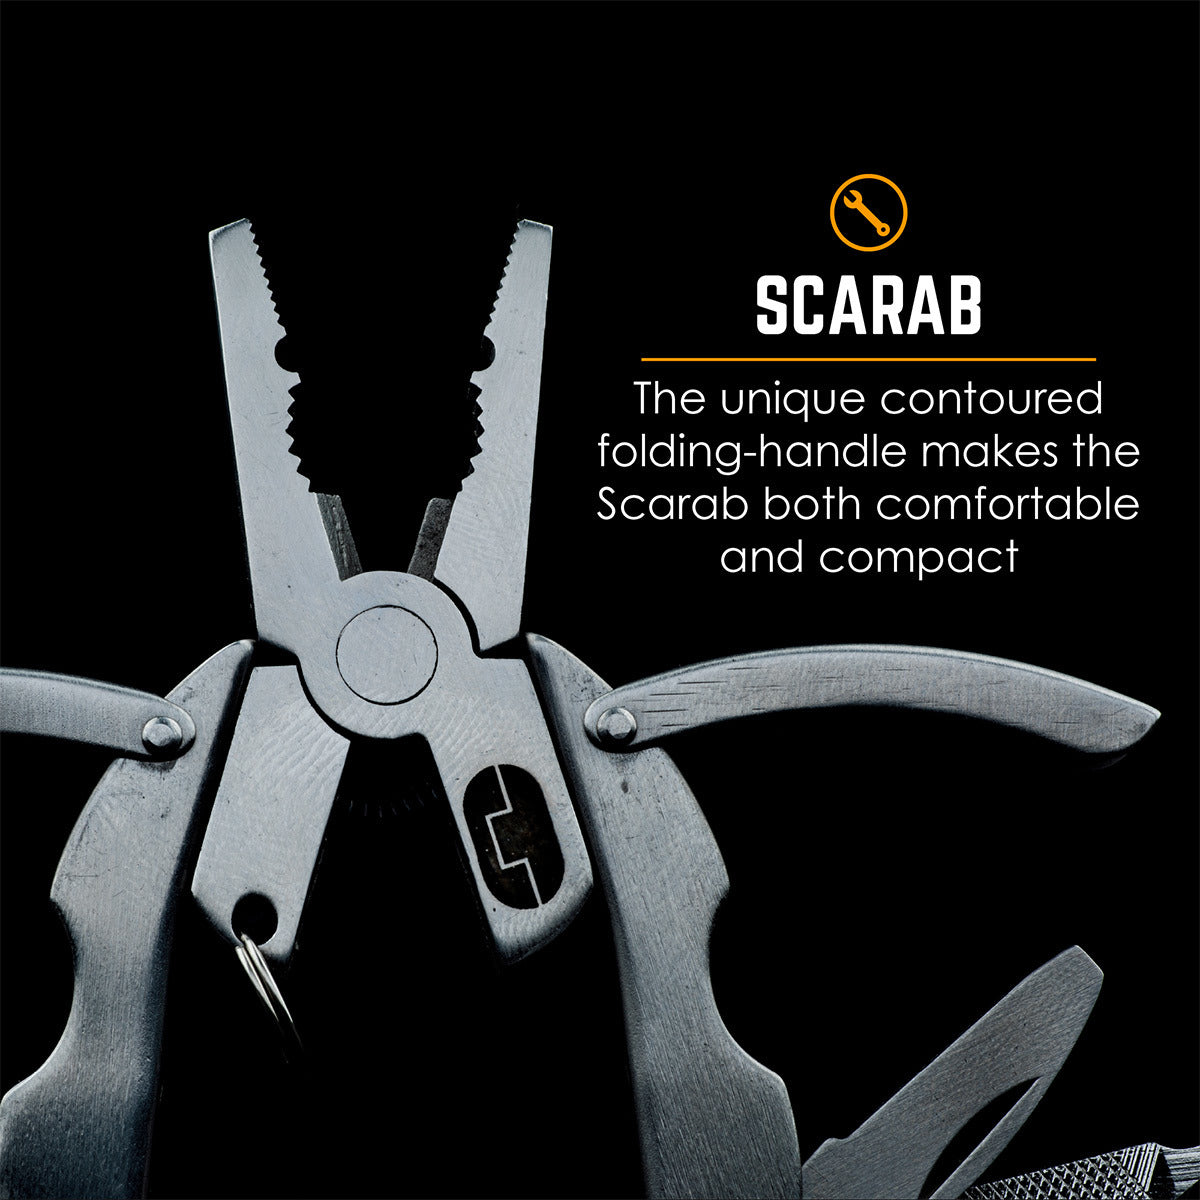 True Scarab
7 Tools In 1. Unique Folding Design Multi Tool - The Tool Store